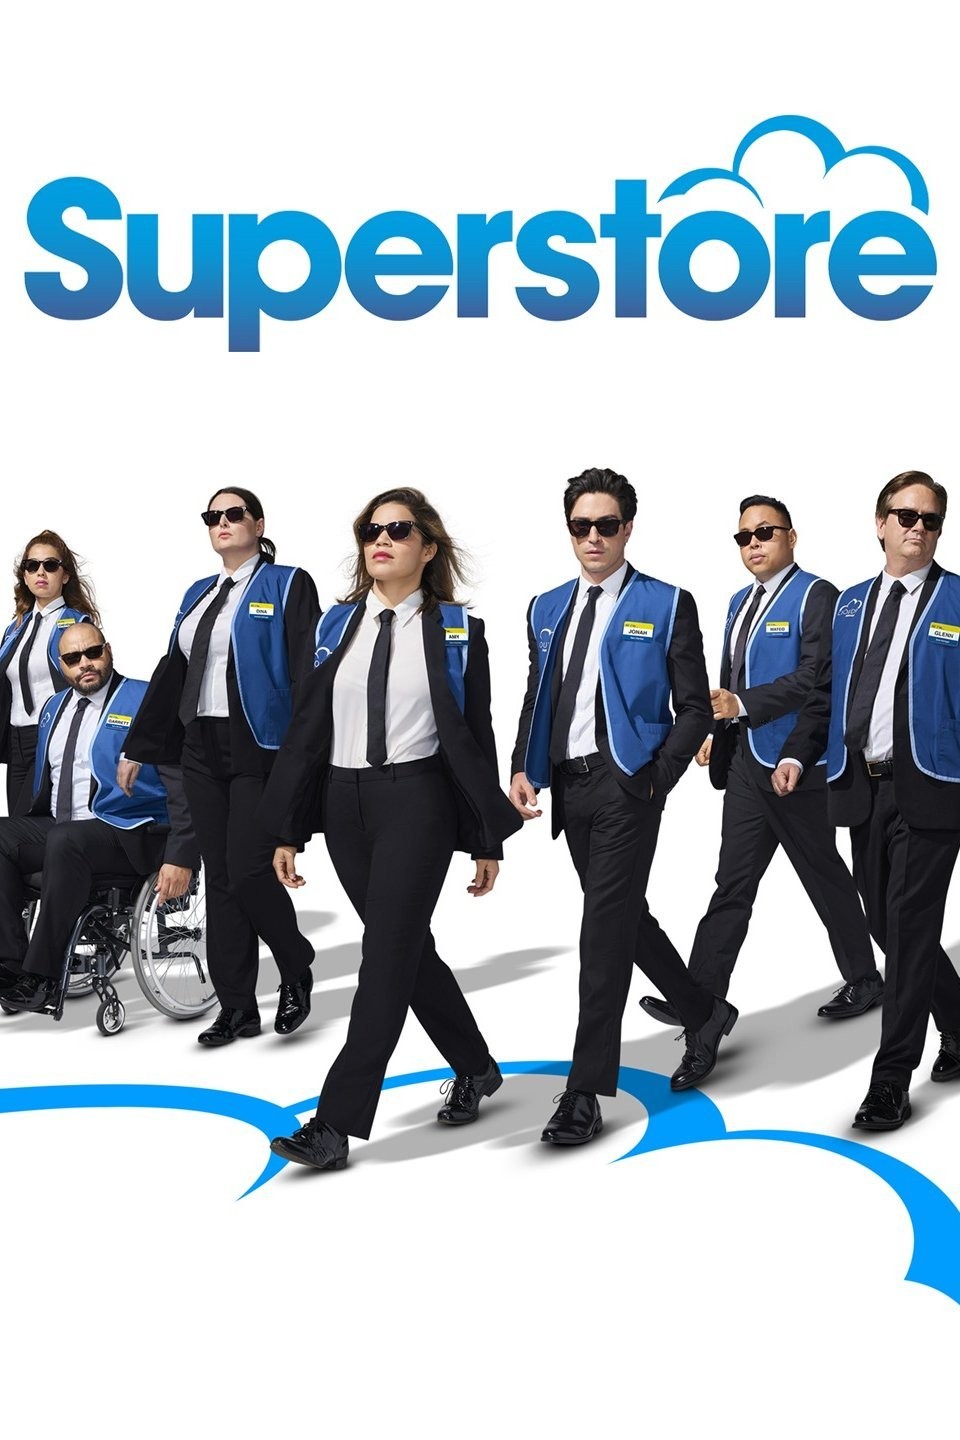 Superstore: how the NBC sitcom got so good - Vox